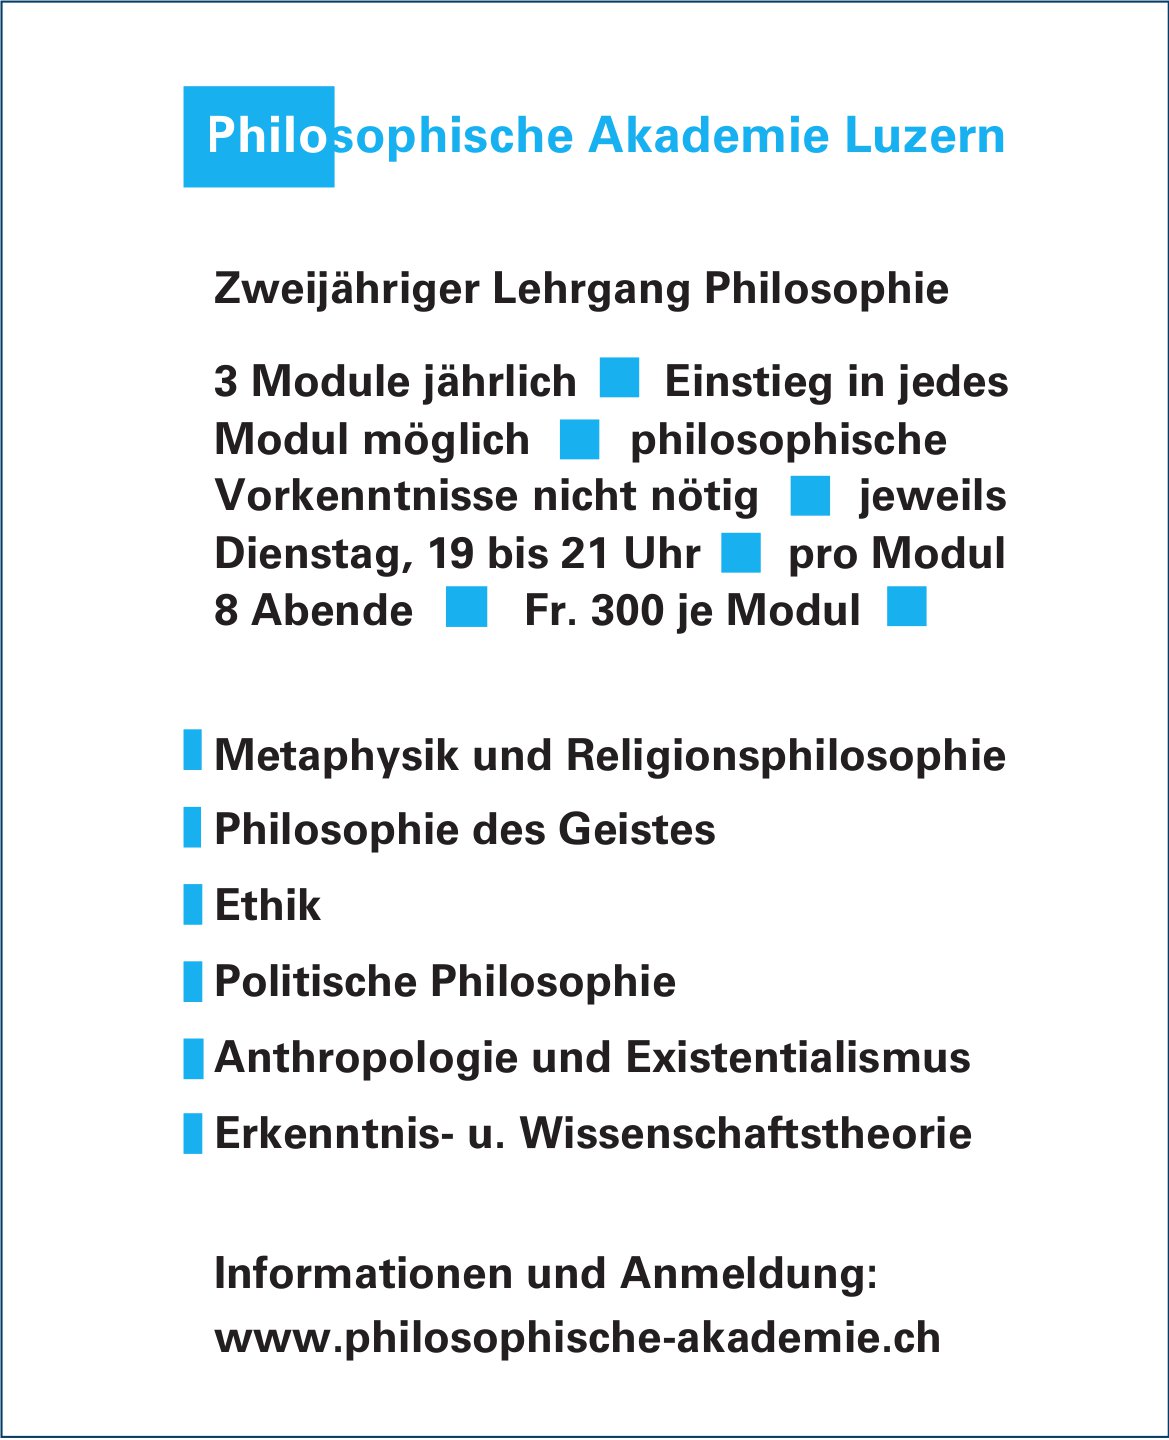 Philosophische Akademie Luzern, Zweijähriger Lehrgang Philosophie